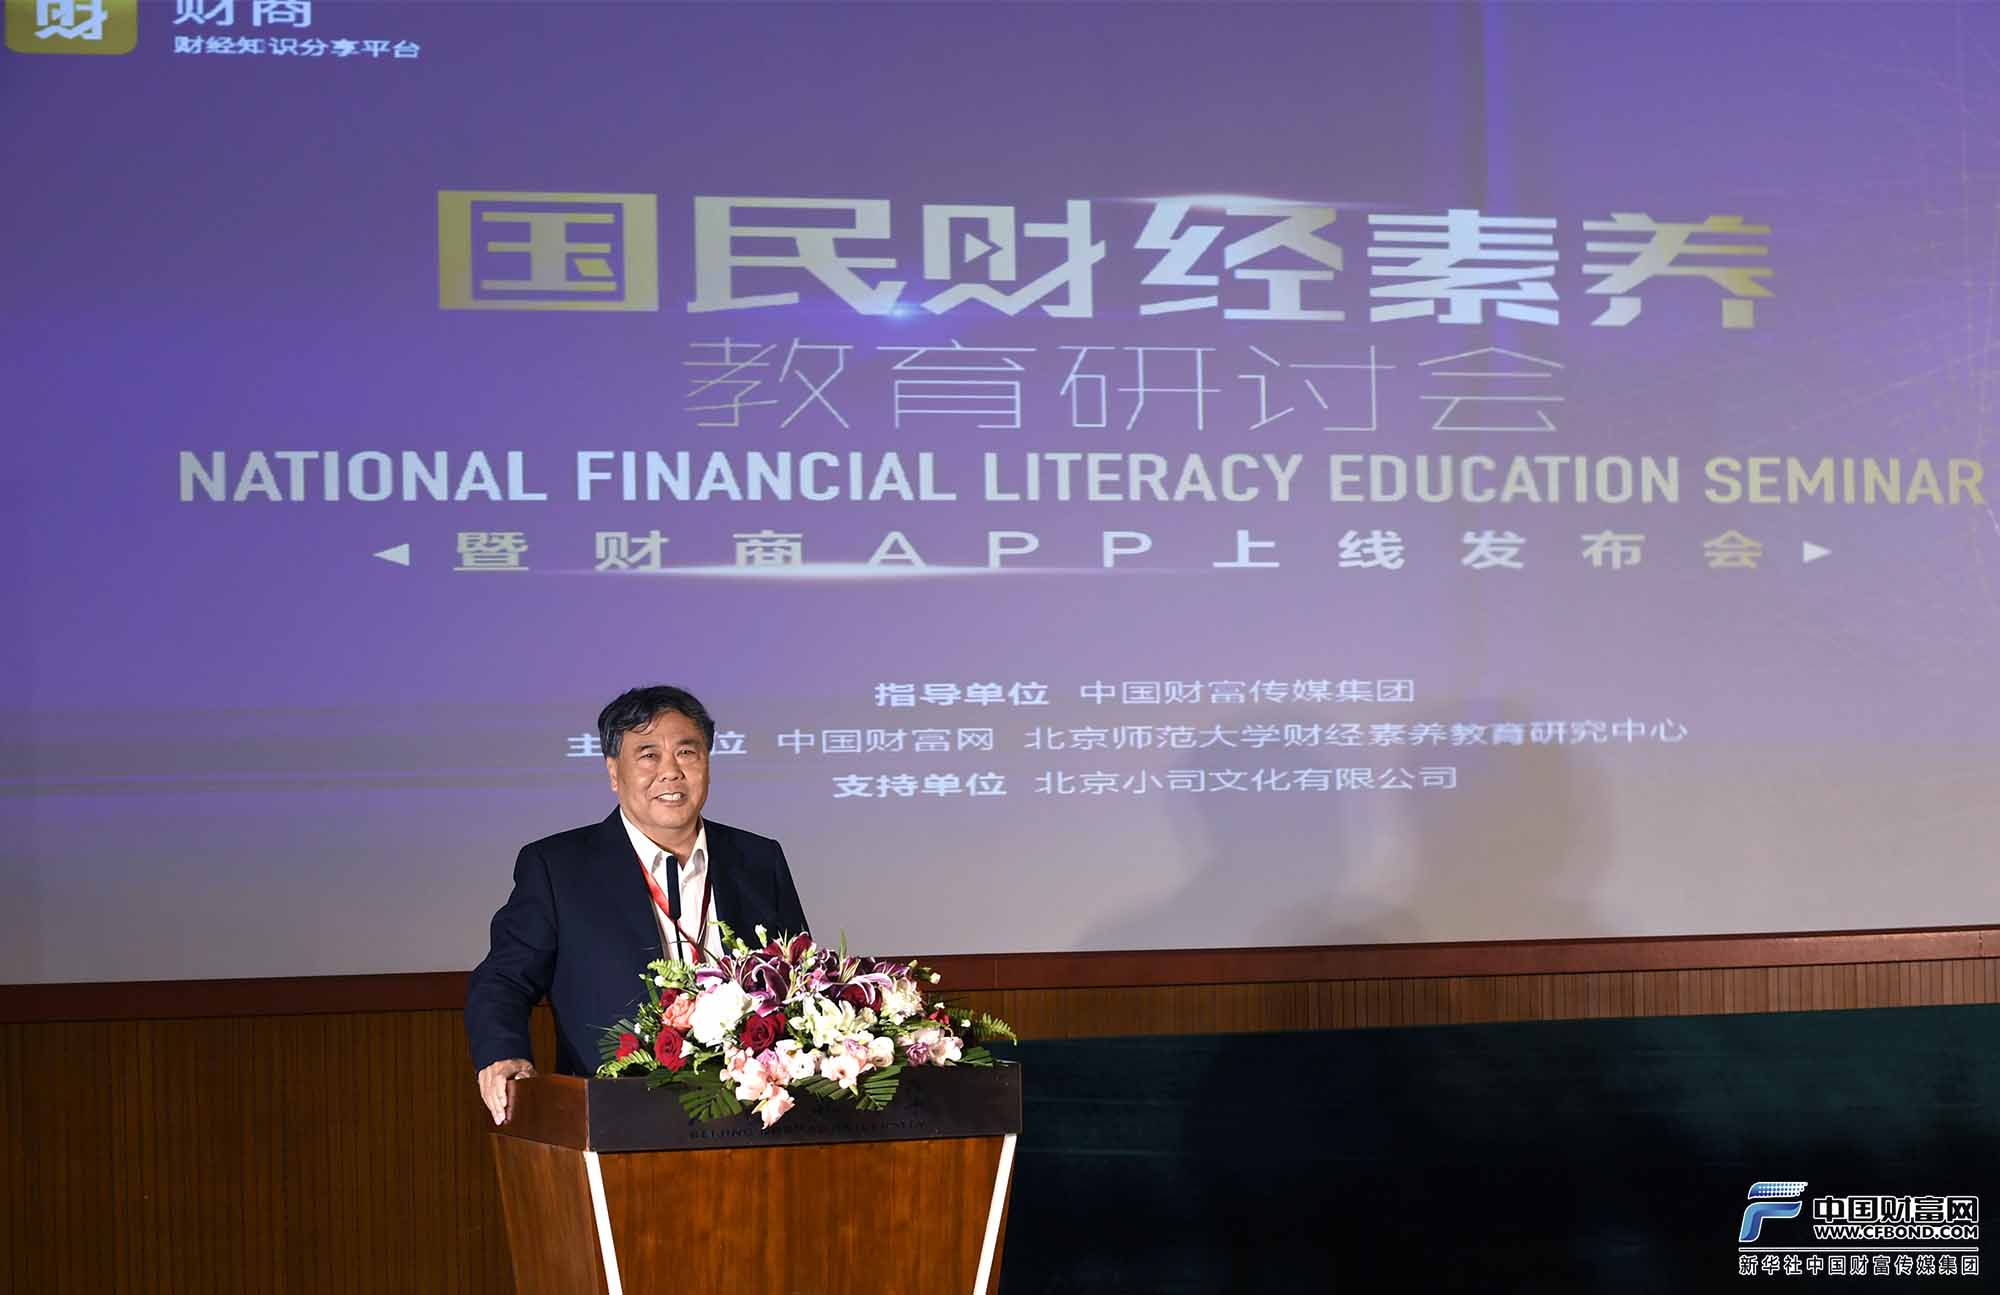 《中国高校科技》总编辑、国家教育行政学院教授李志民发表演讲